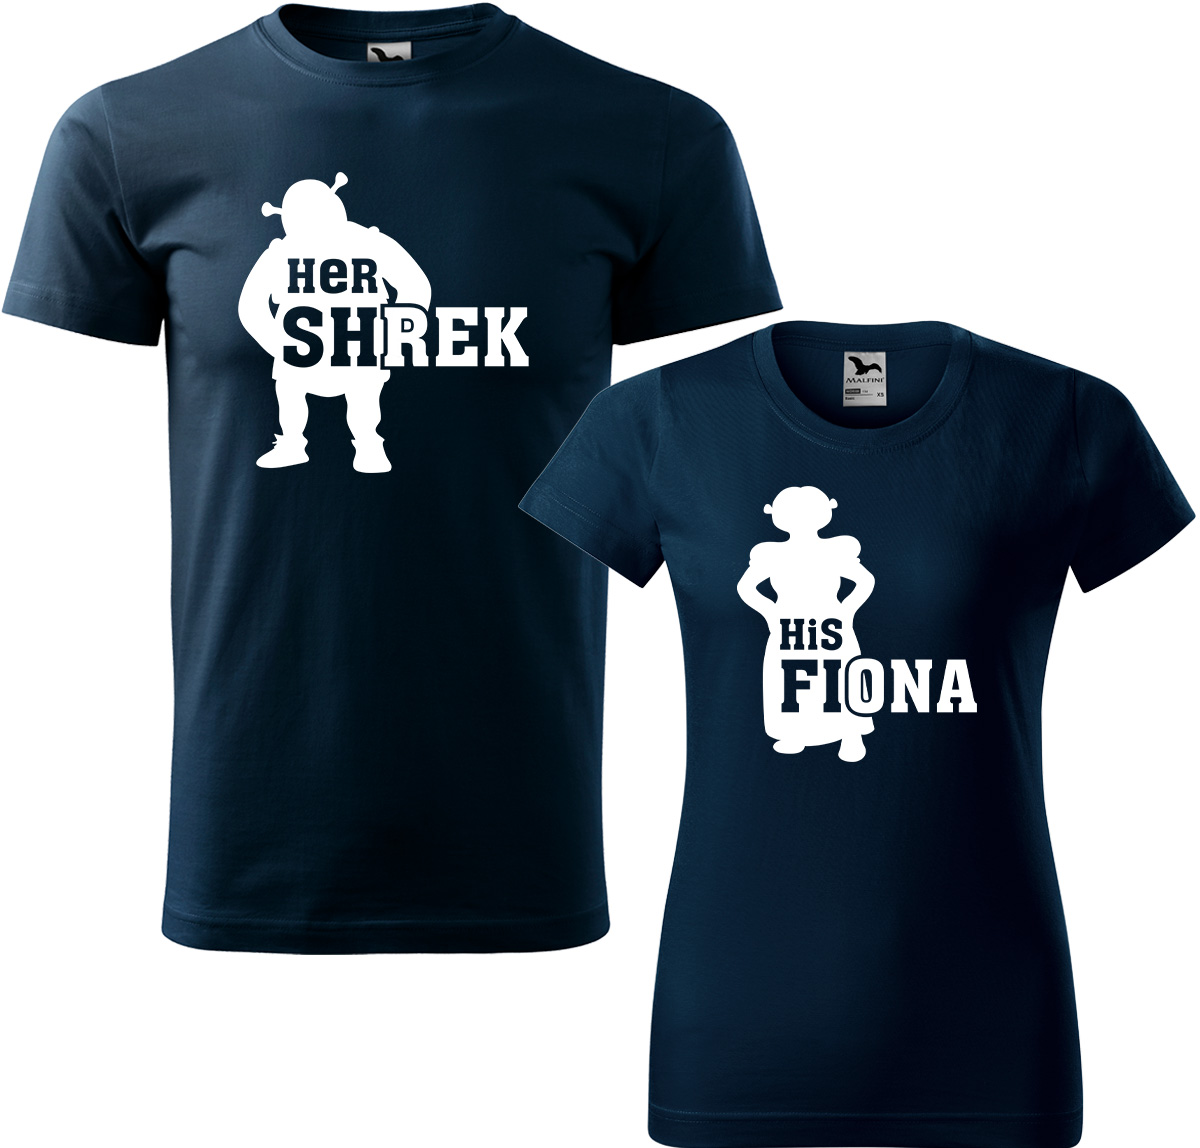 Trička pro páry - Shrek a Fiona Barva: Námořní modrá (02), Velikost dámské tričko: L, Velikost pánské tričko: L